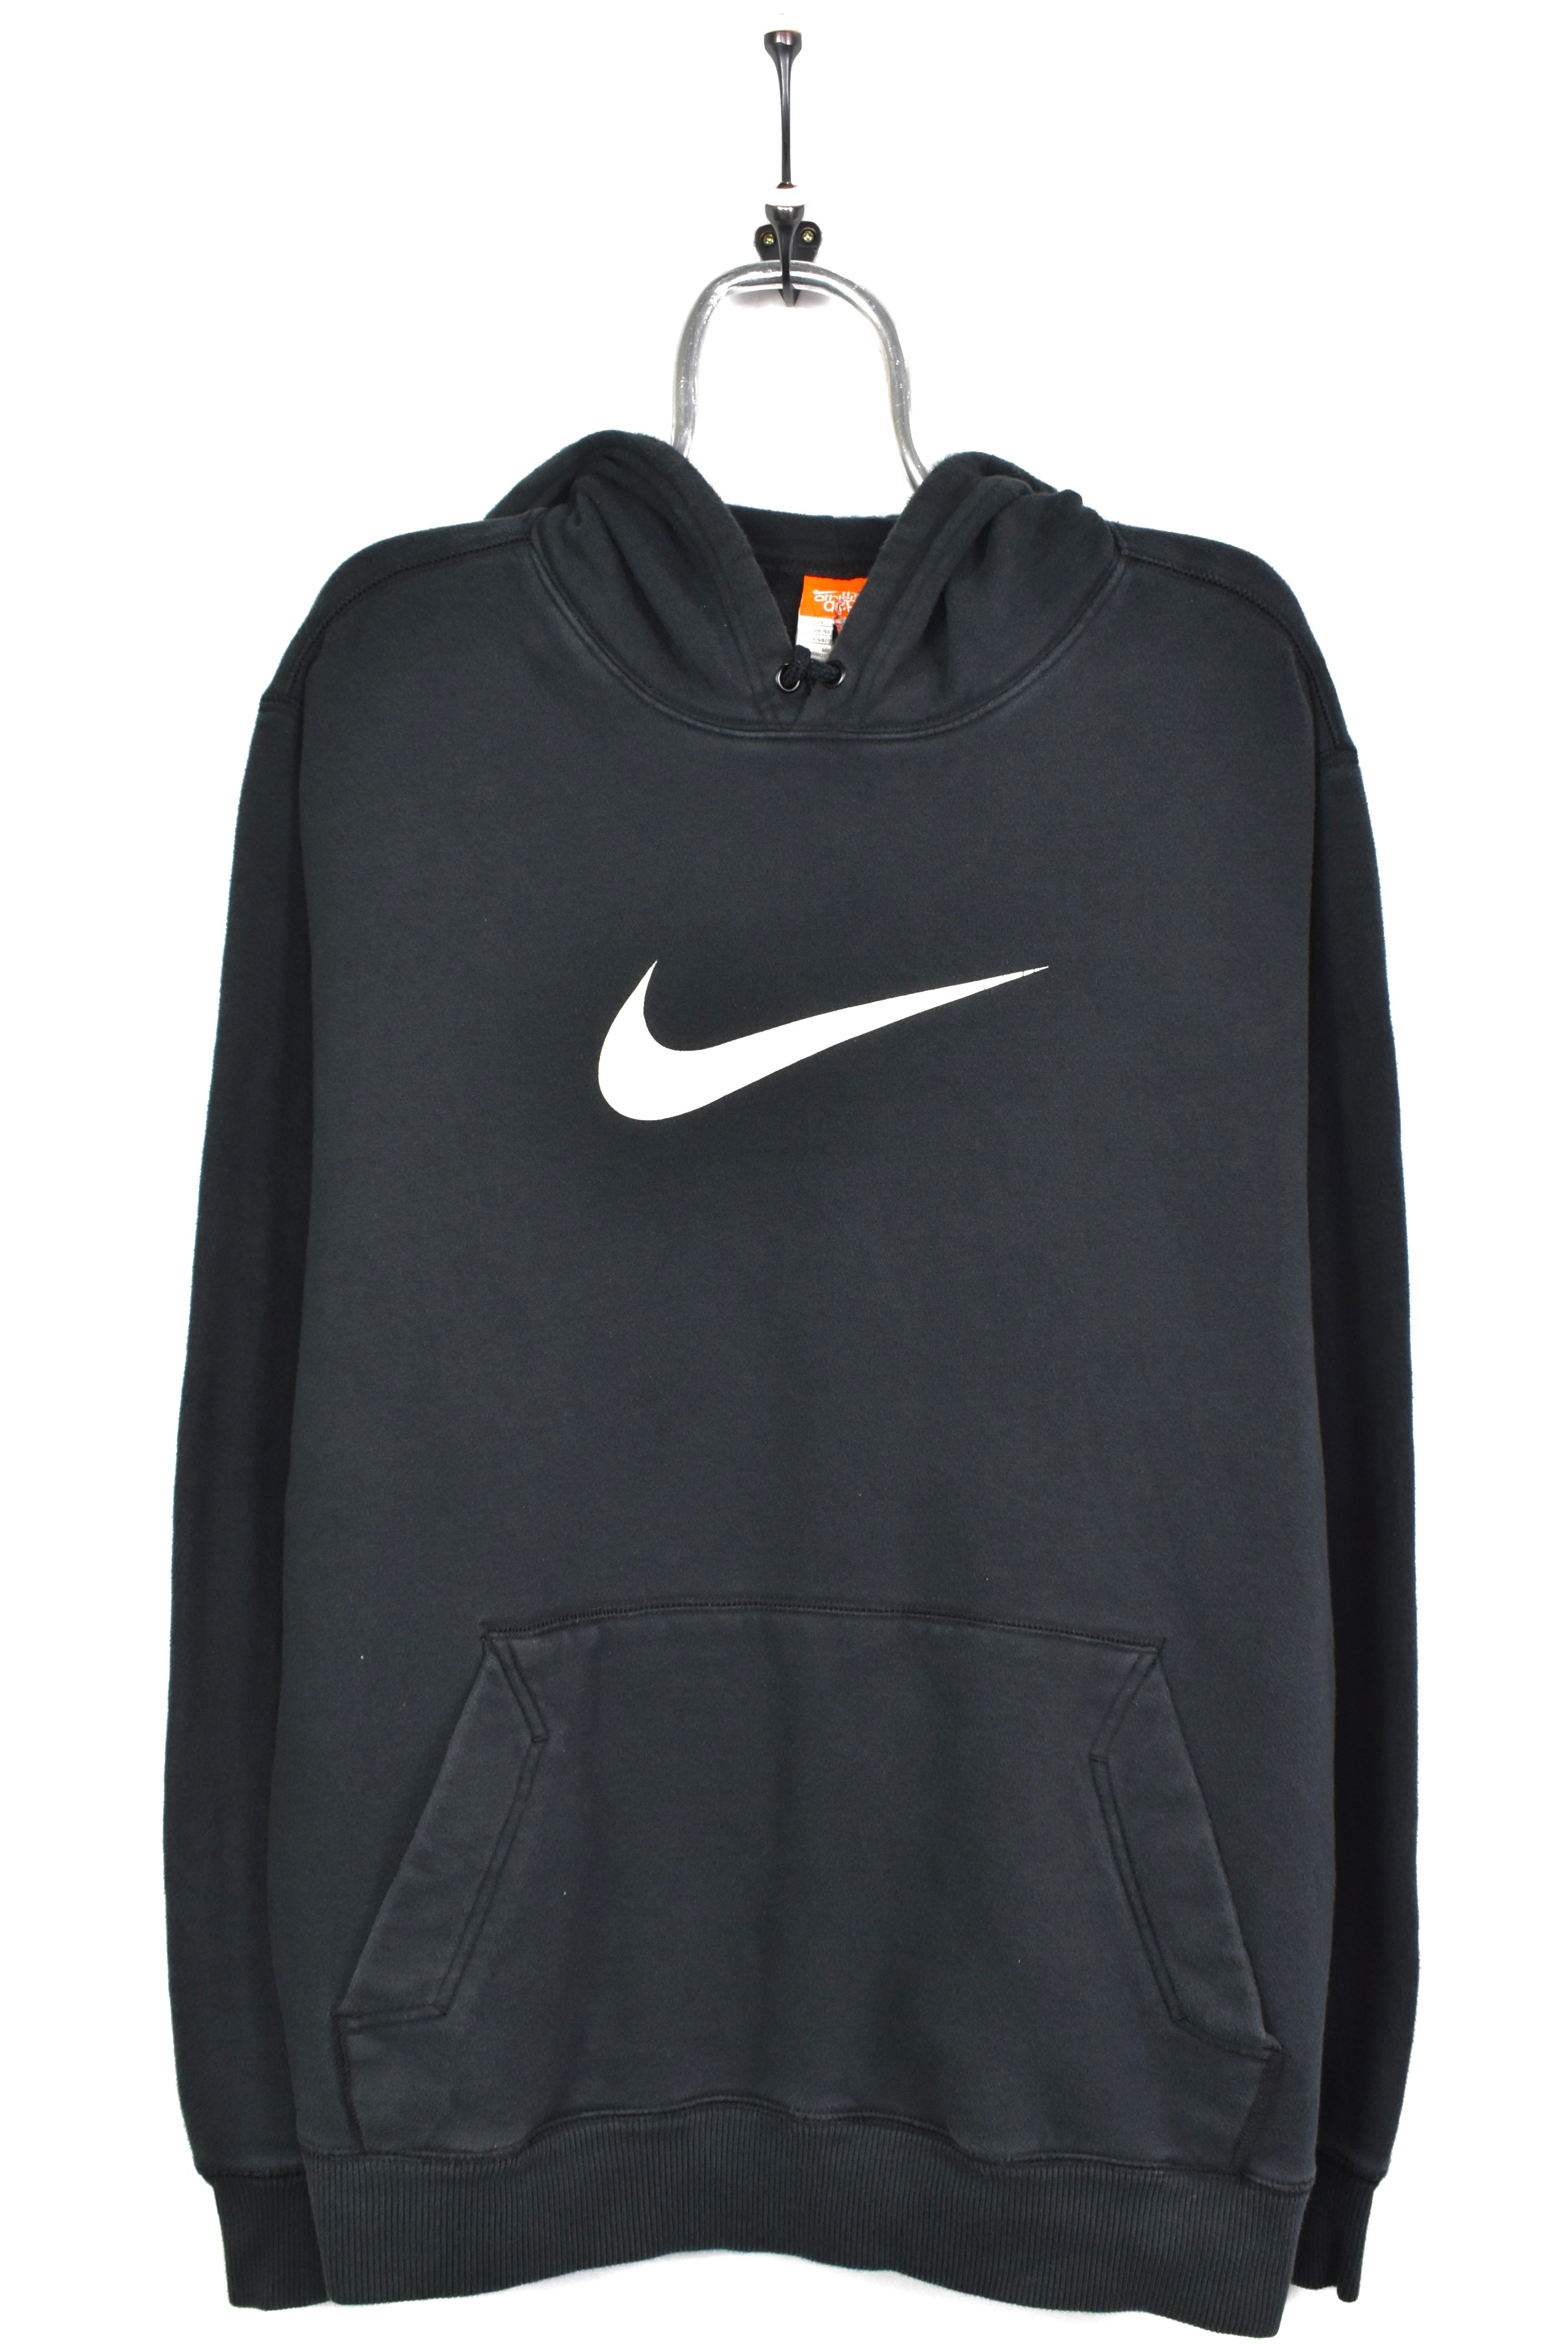 Vintage Nike hoodie, pullover graphic sweatshirt - XL, black NIKE